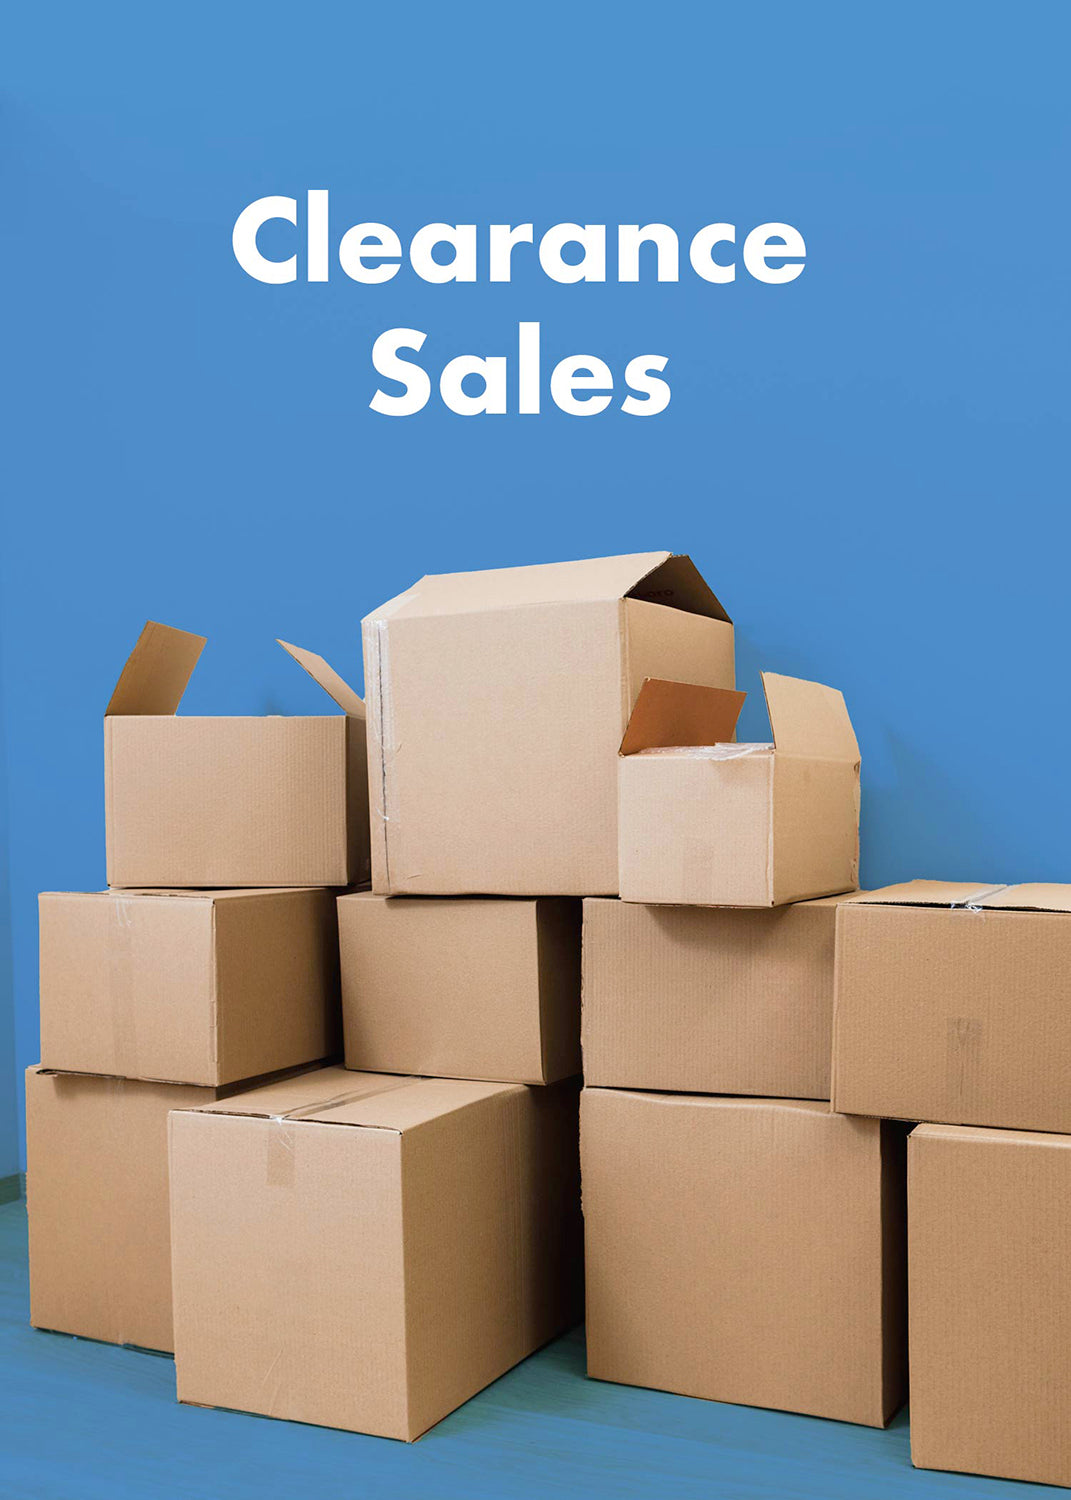 Clearances Sales